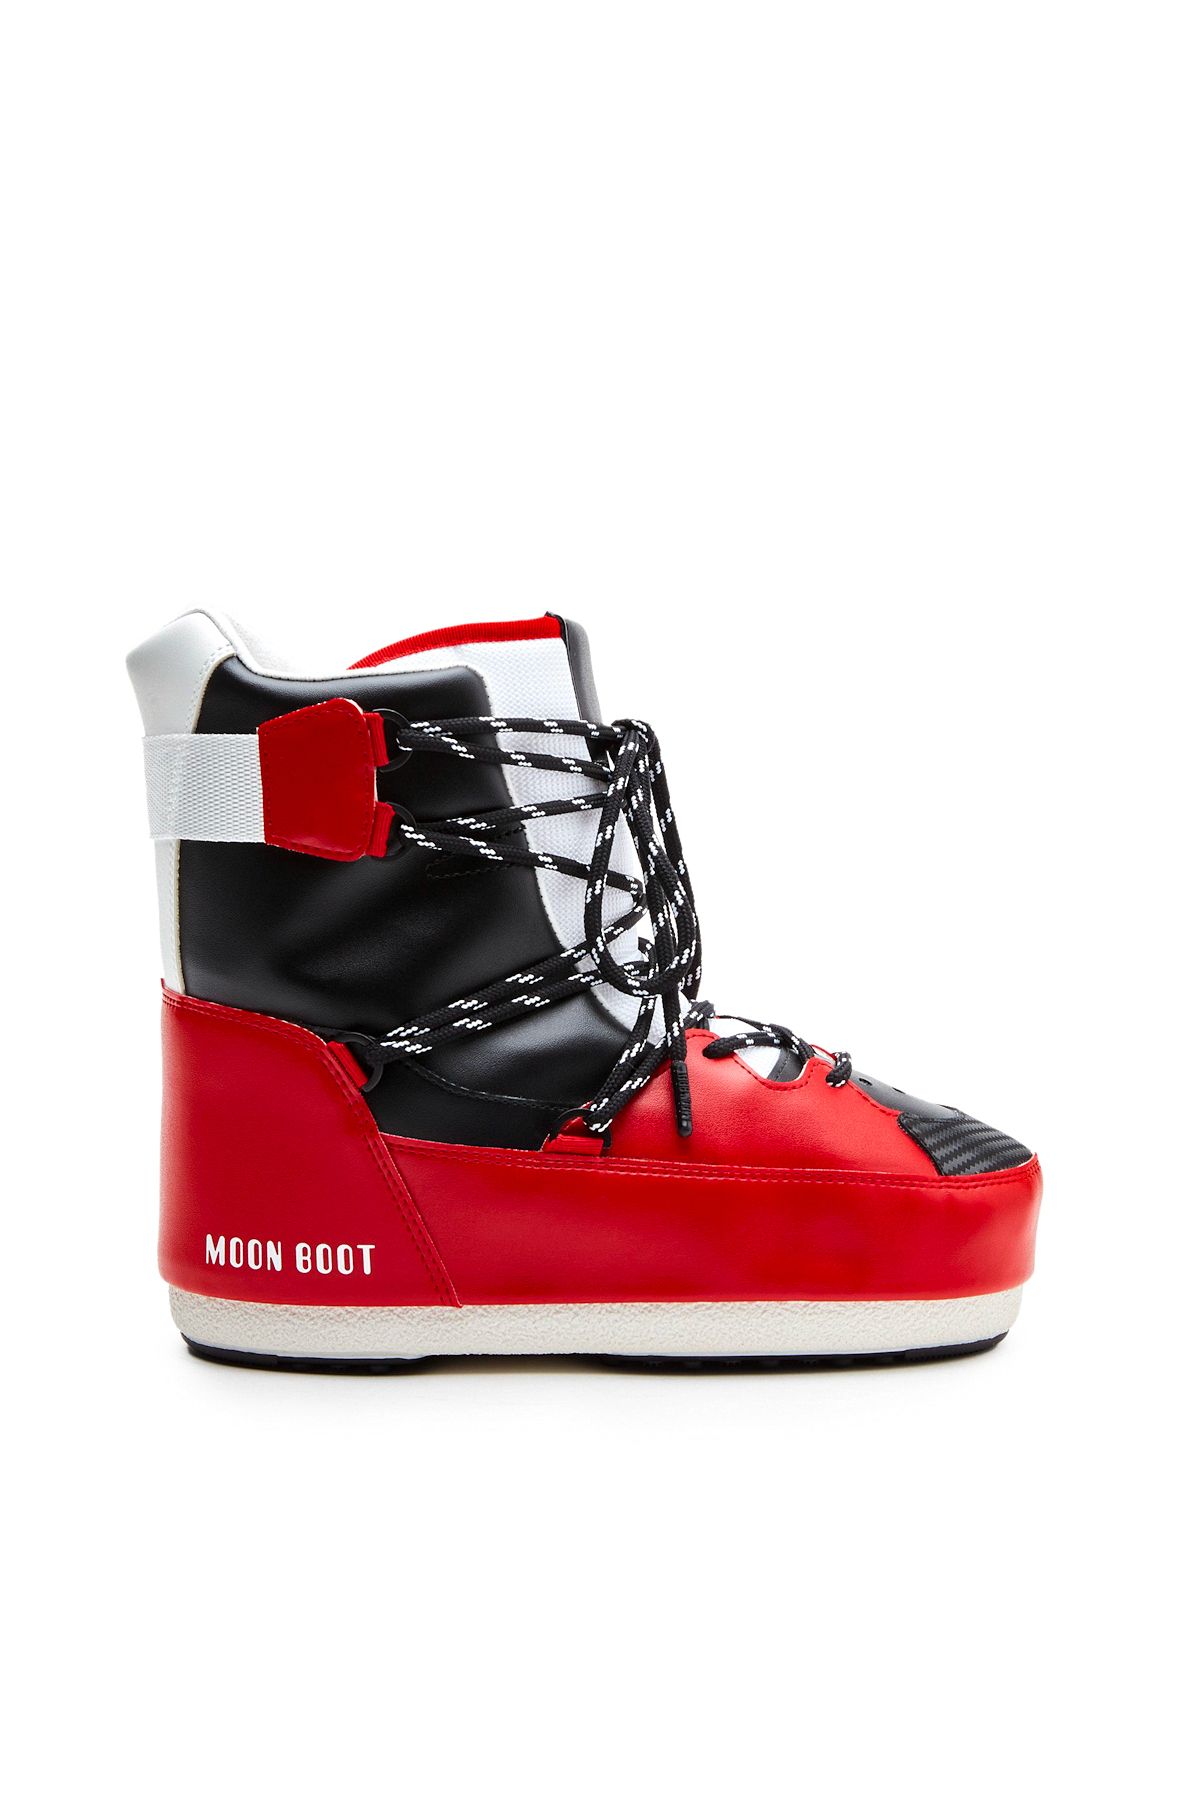 Moon Boot 14028200-004 Sneaker Mıd White / Red / Black